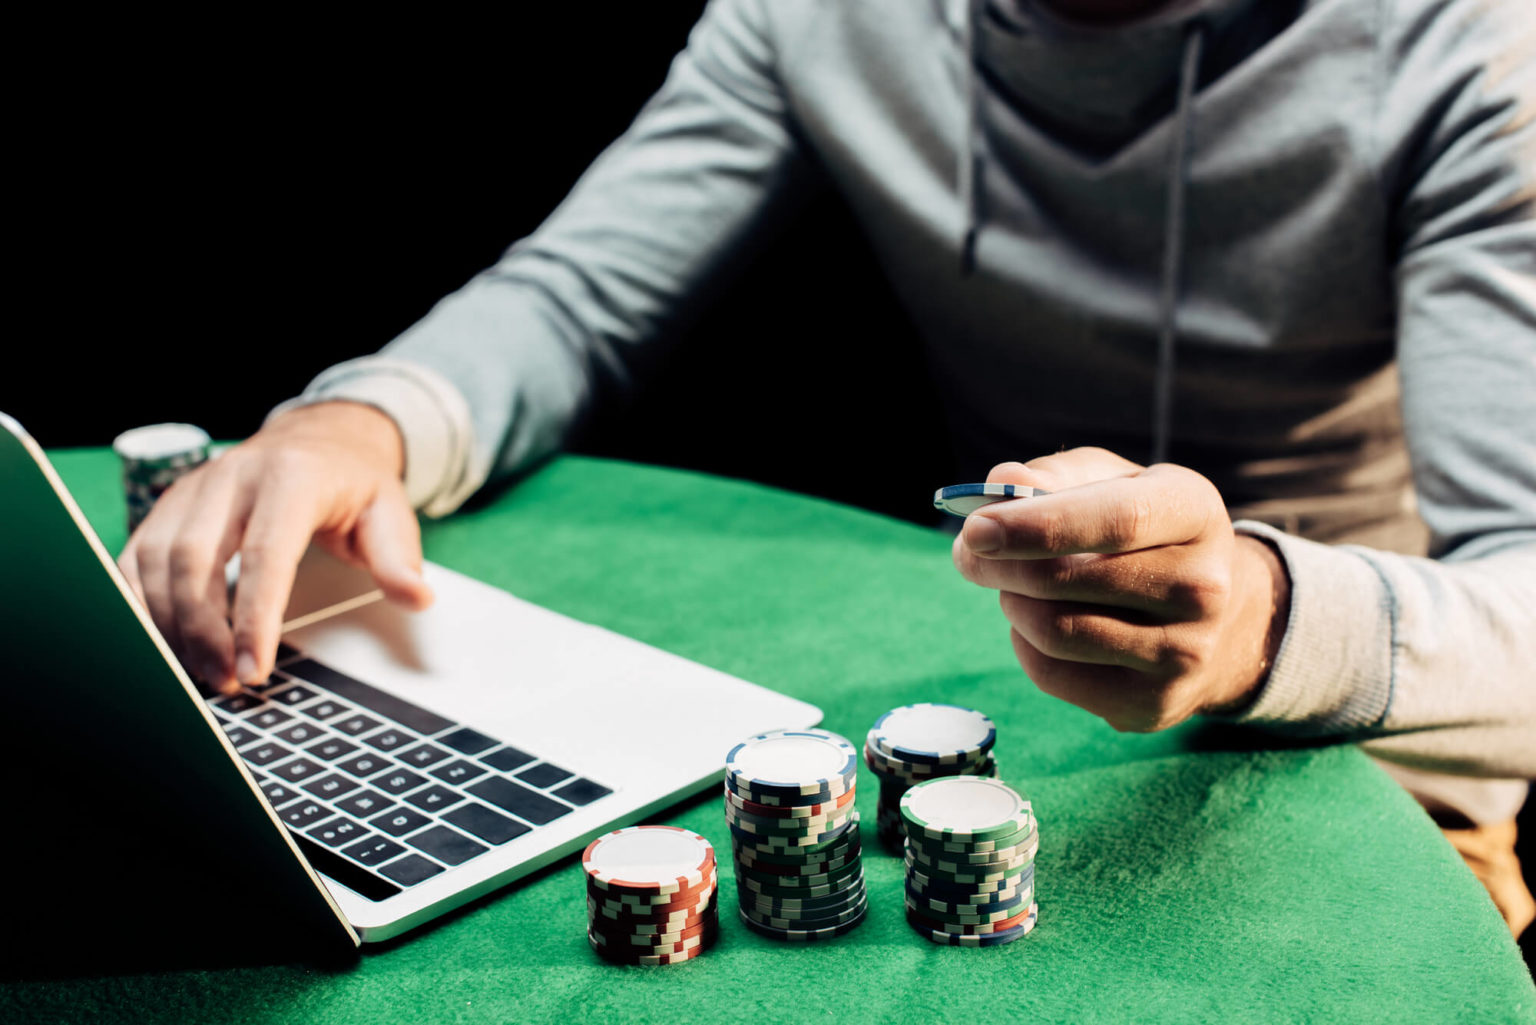 washington state gaming law online poker